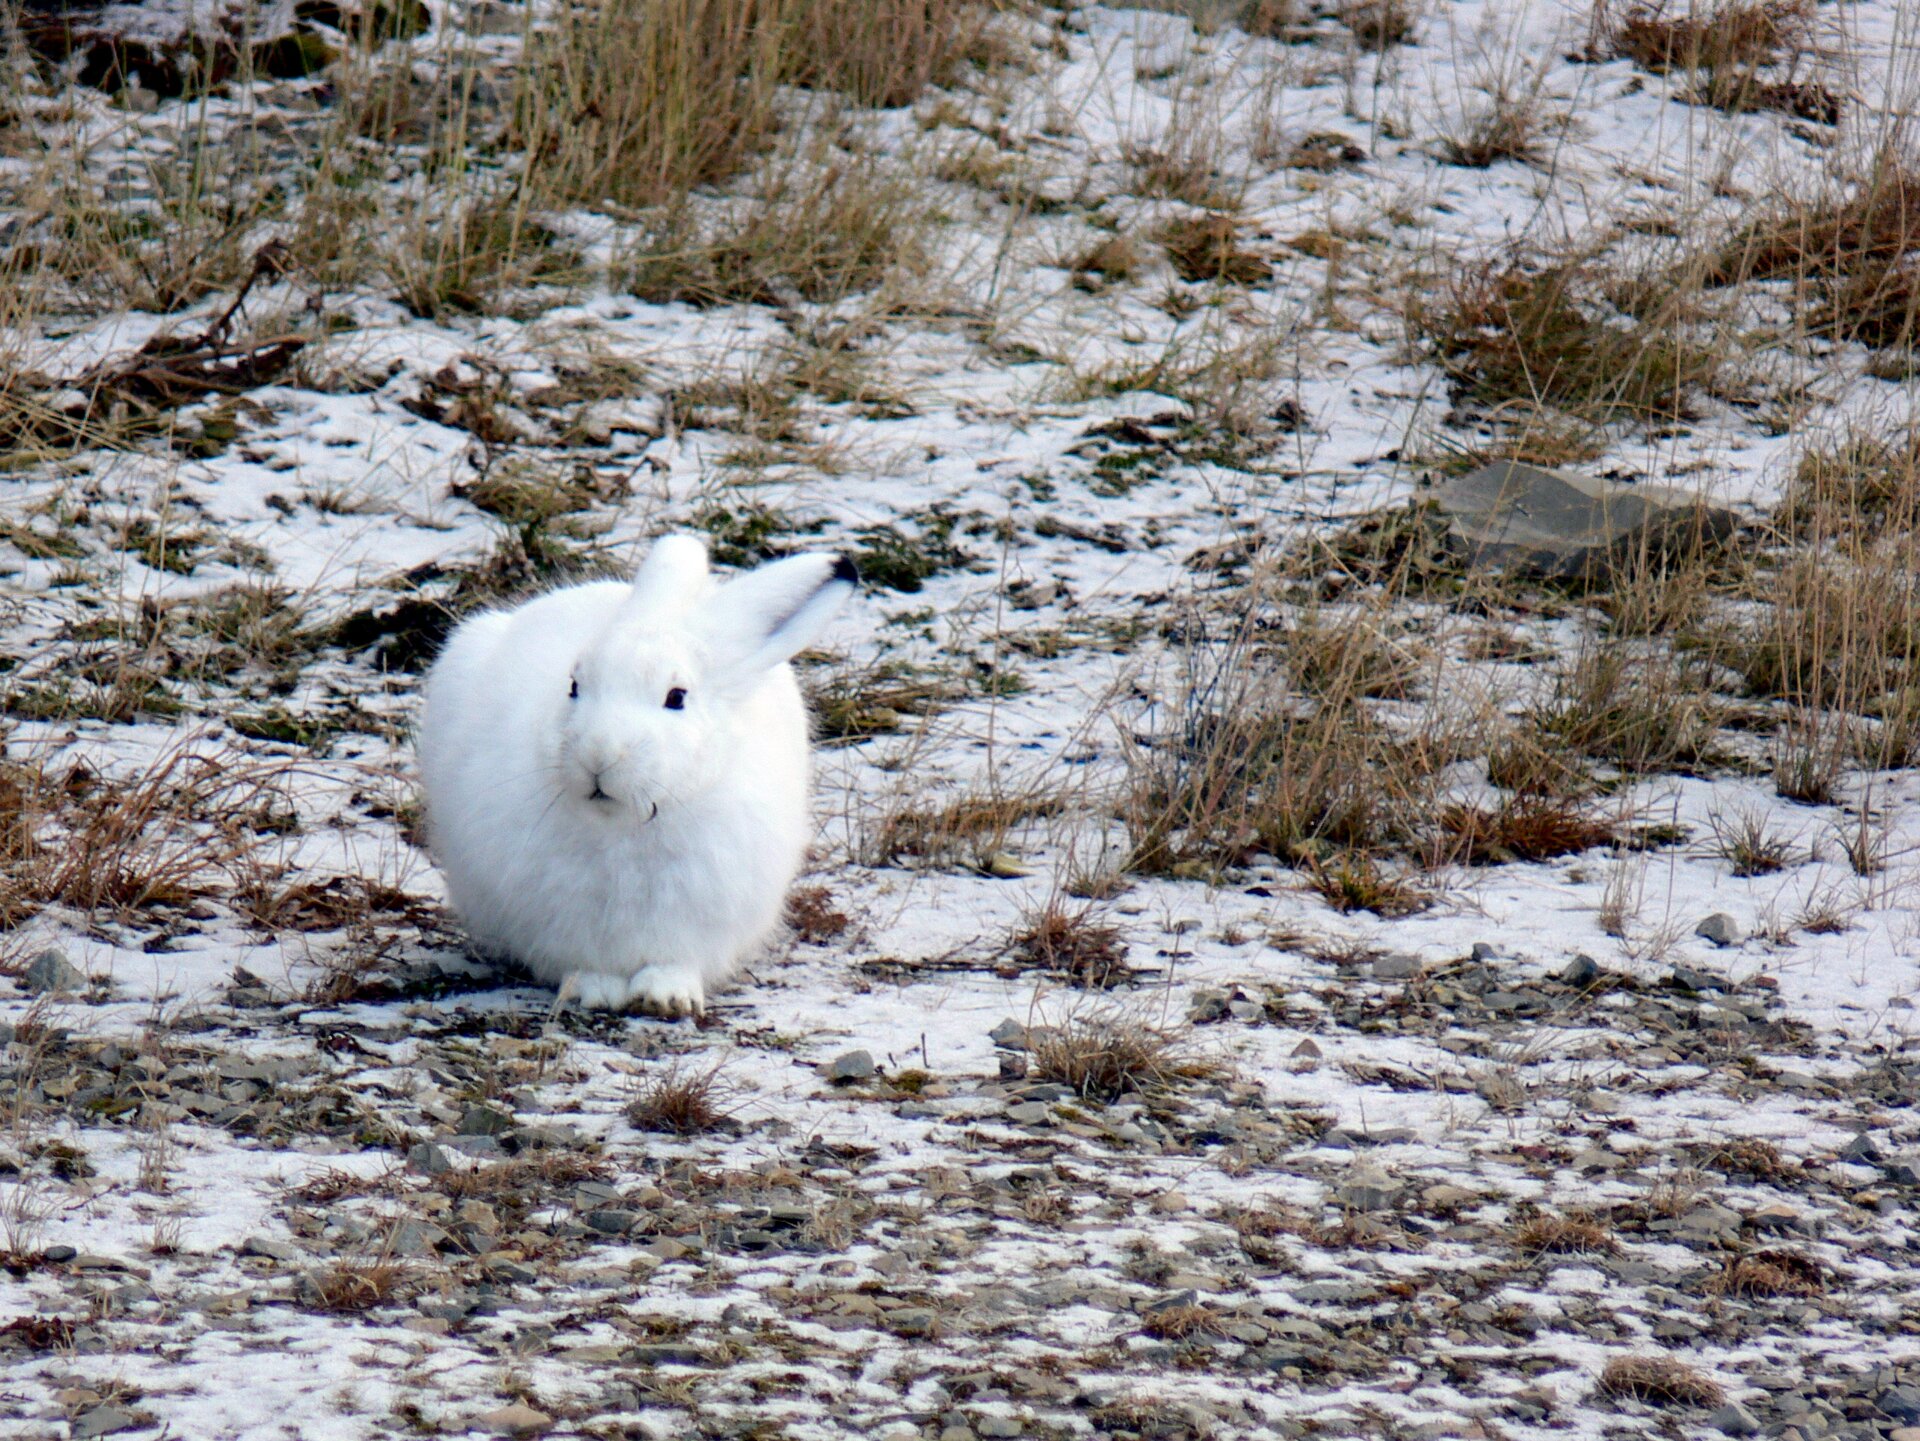 Druga fotografia prezentuje białego królika, siedzącego na ziemi przodem do obserwatora. Ziemia pokryta jest cienka warstwą śniegu.